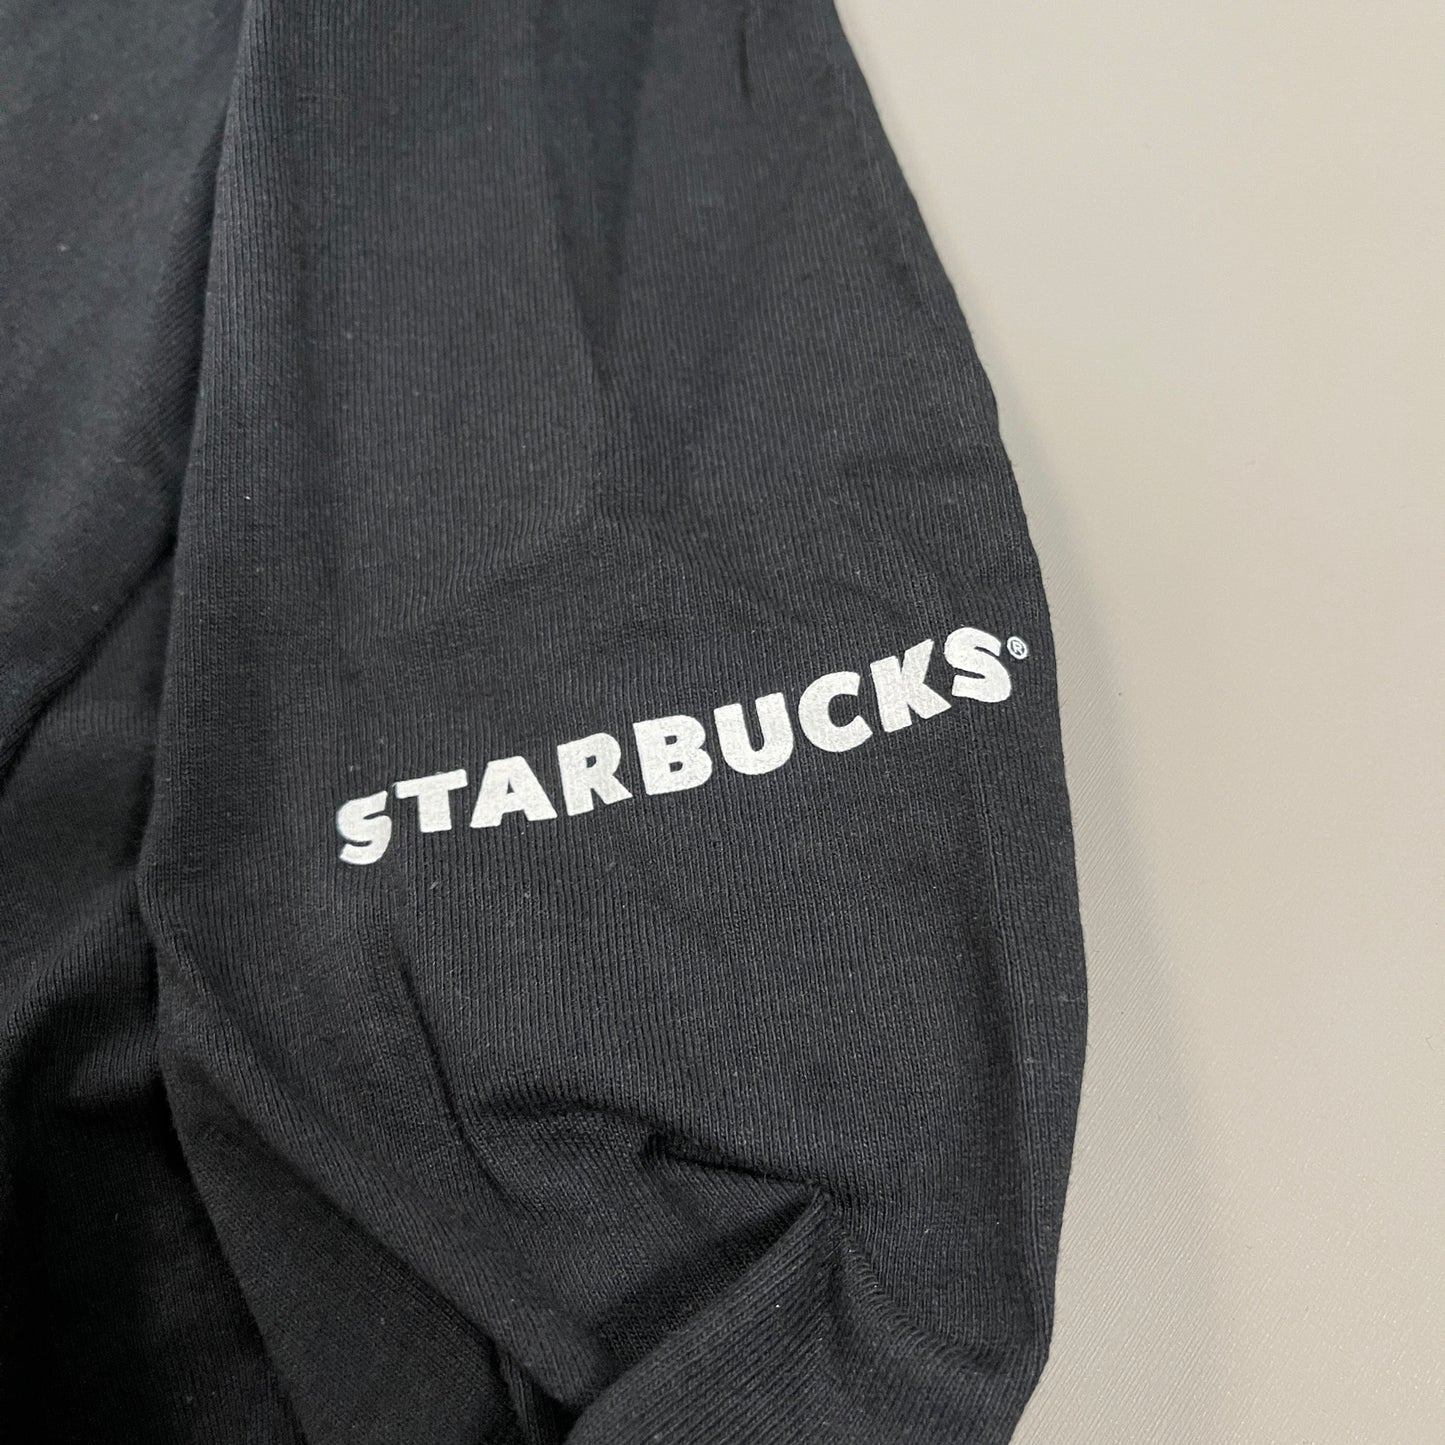 STARBUCKS Mock Turtleneck Long Sleeve Logo T-shirt Unisex Sz XL Black (New)